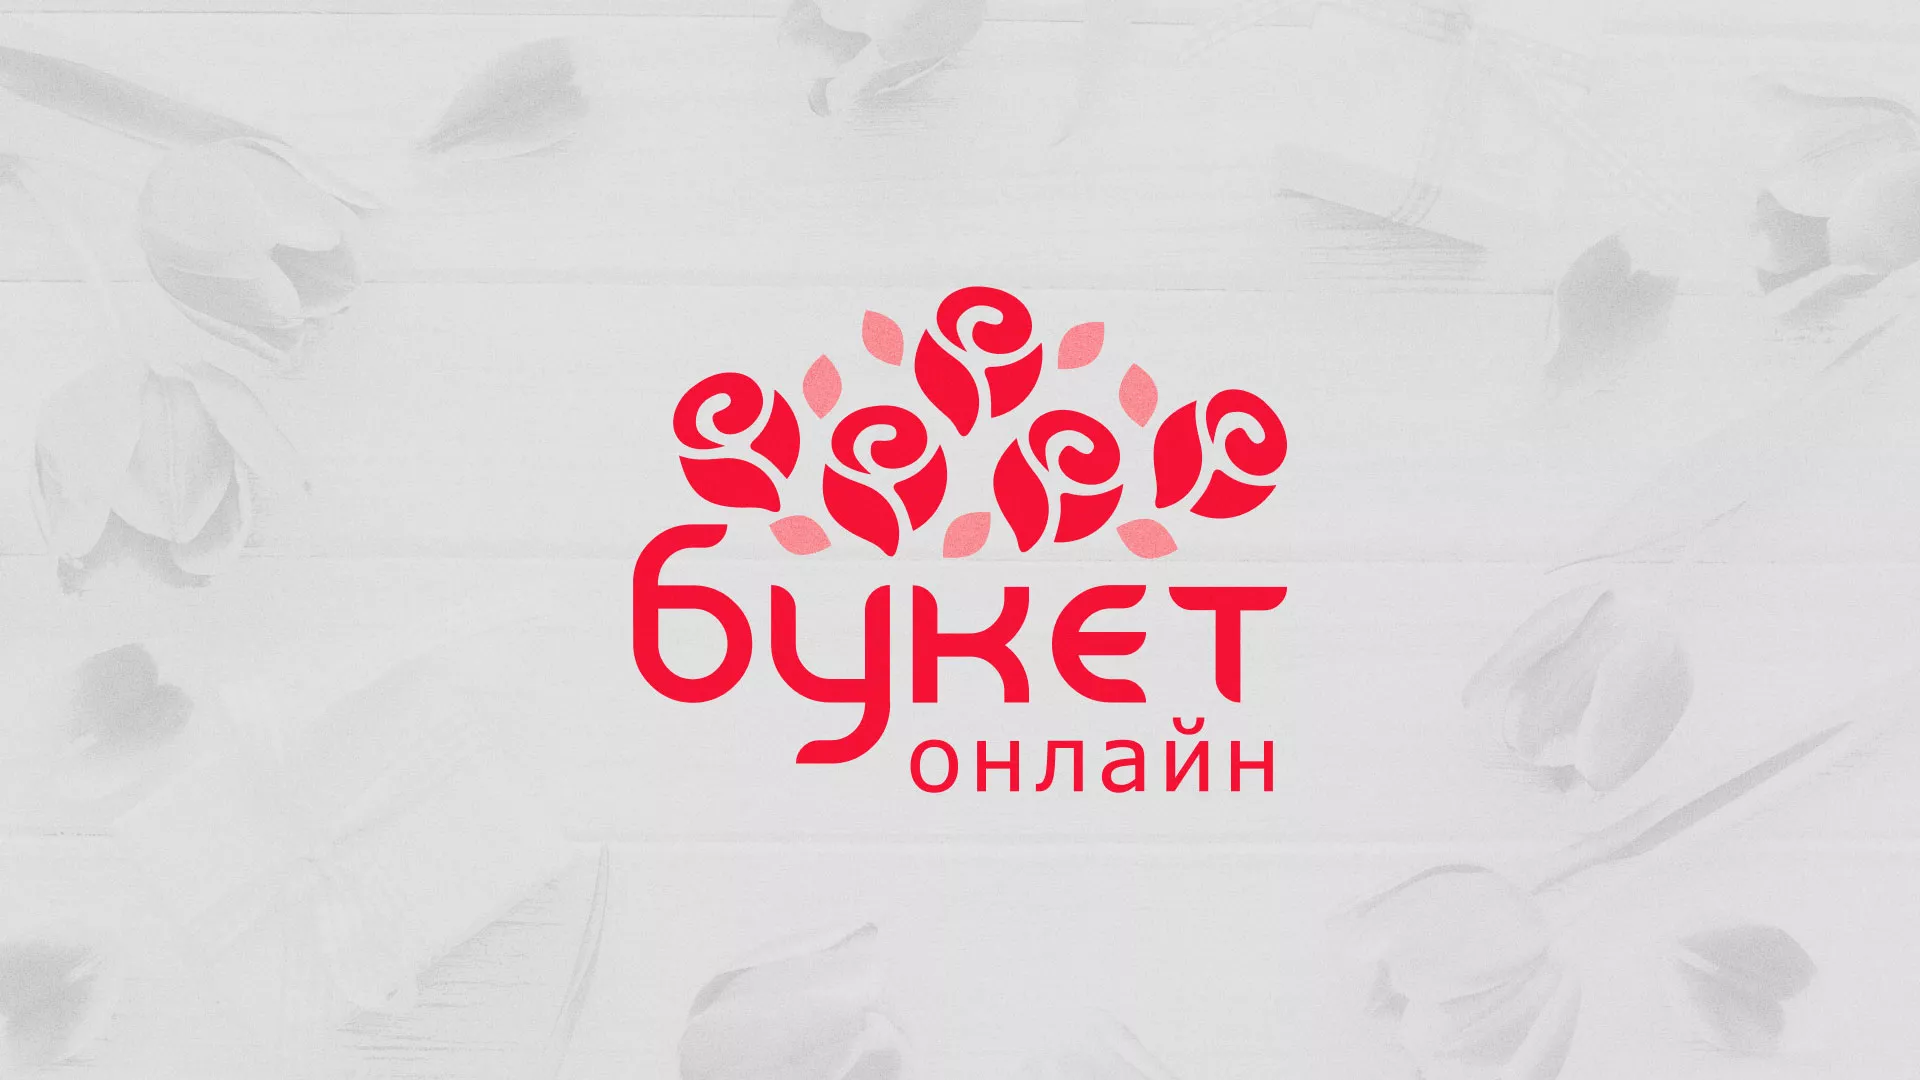 Создание интернет-магазина «Букет-онлайн» по цветам в Белокурихе